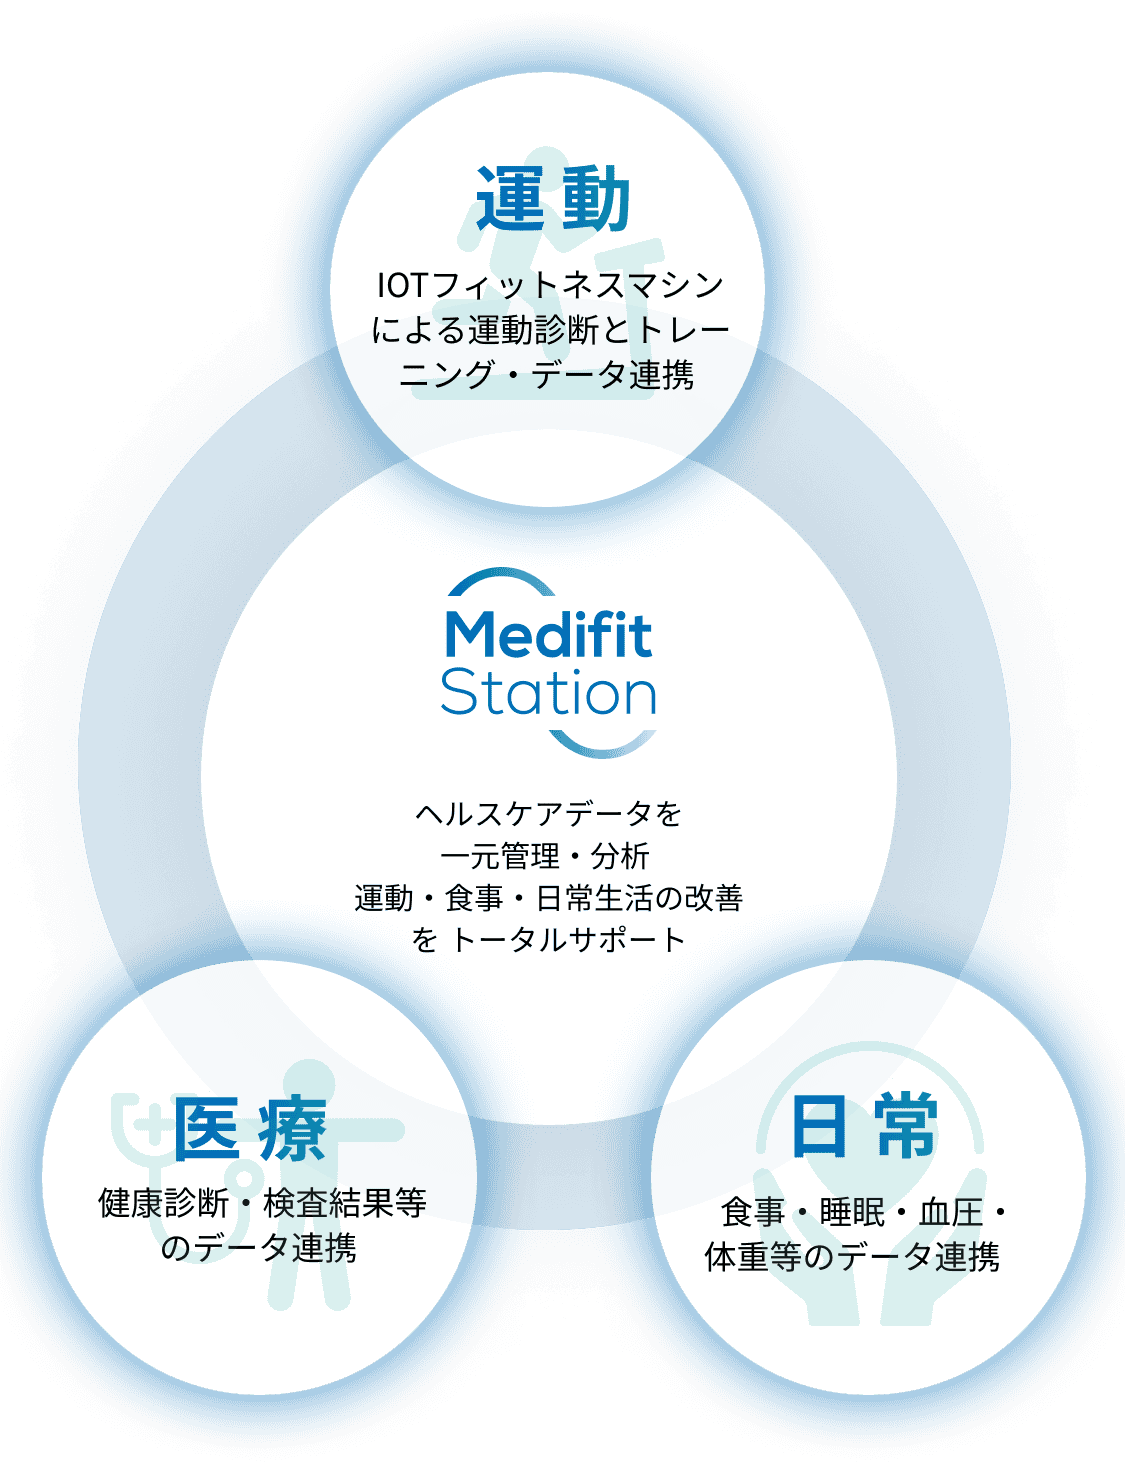 Medifit Station